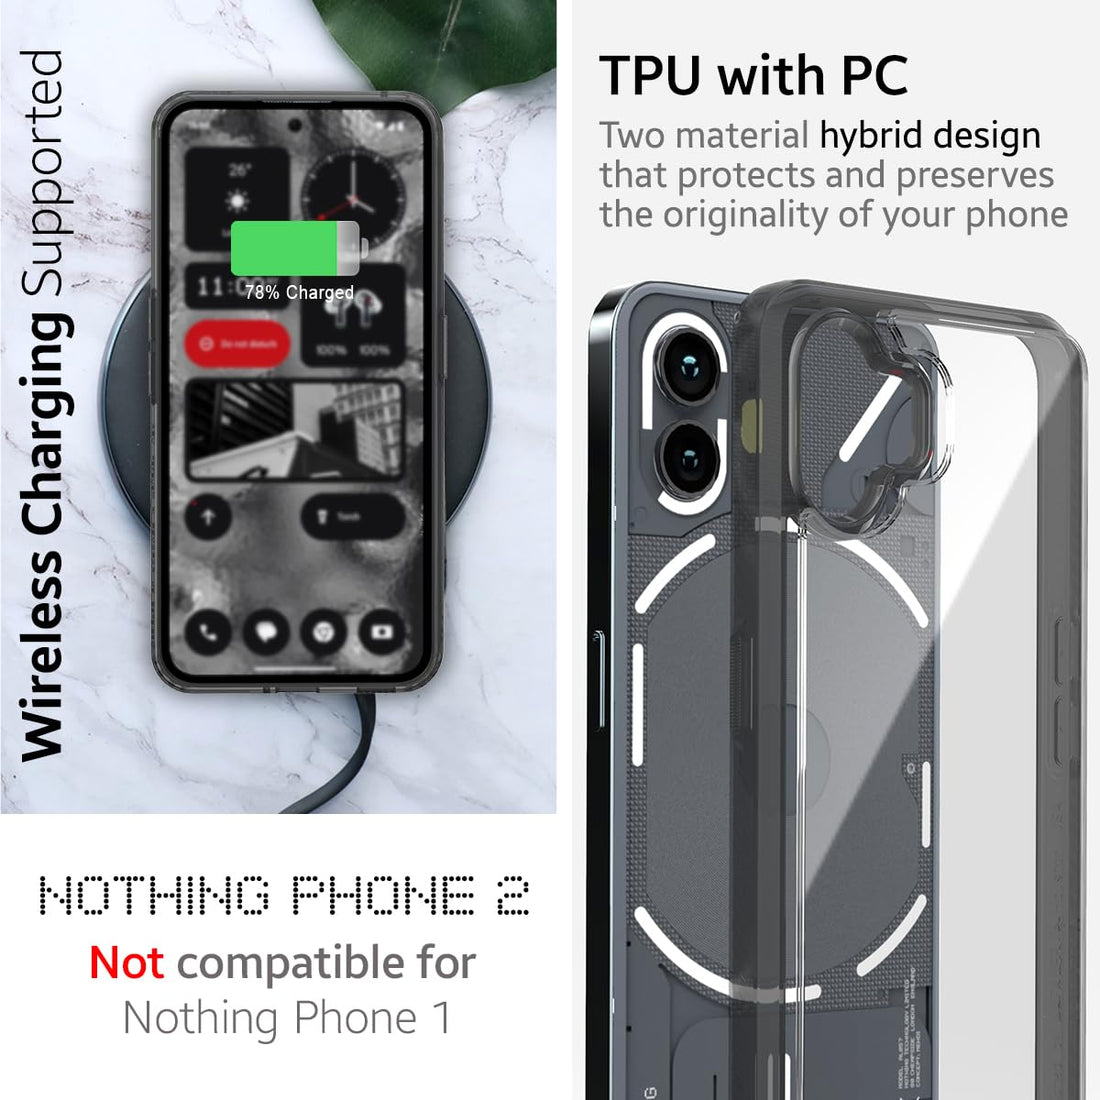 Nothing Phone 2 Back Cover Case | Impulse - Smoke Black